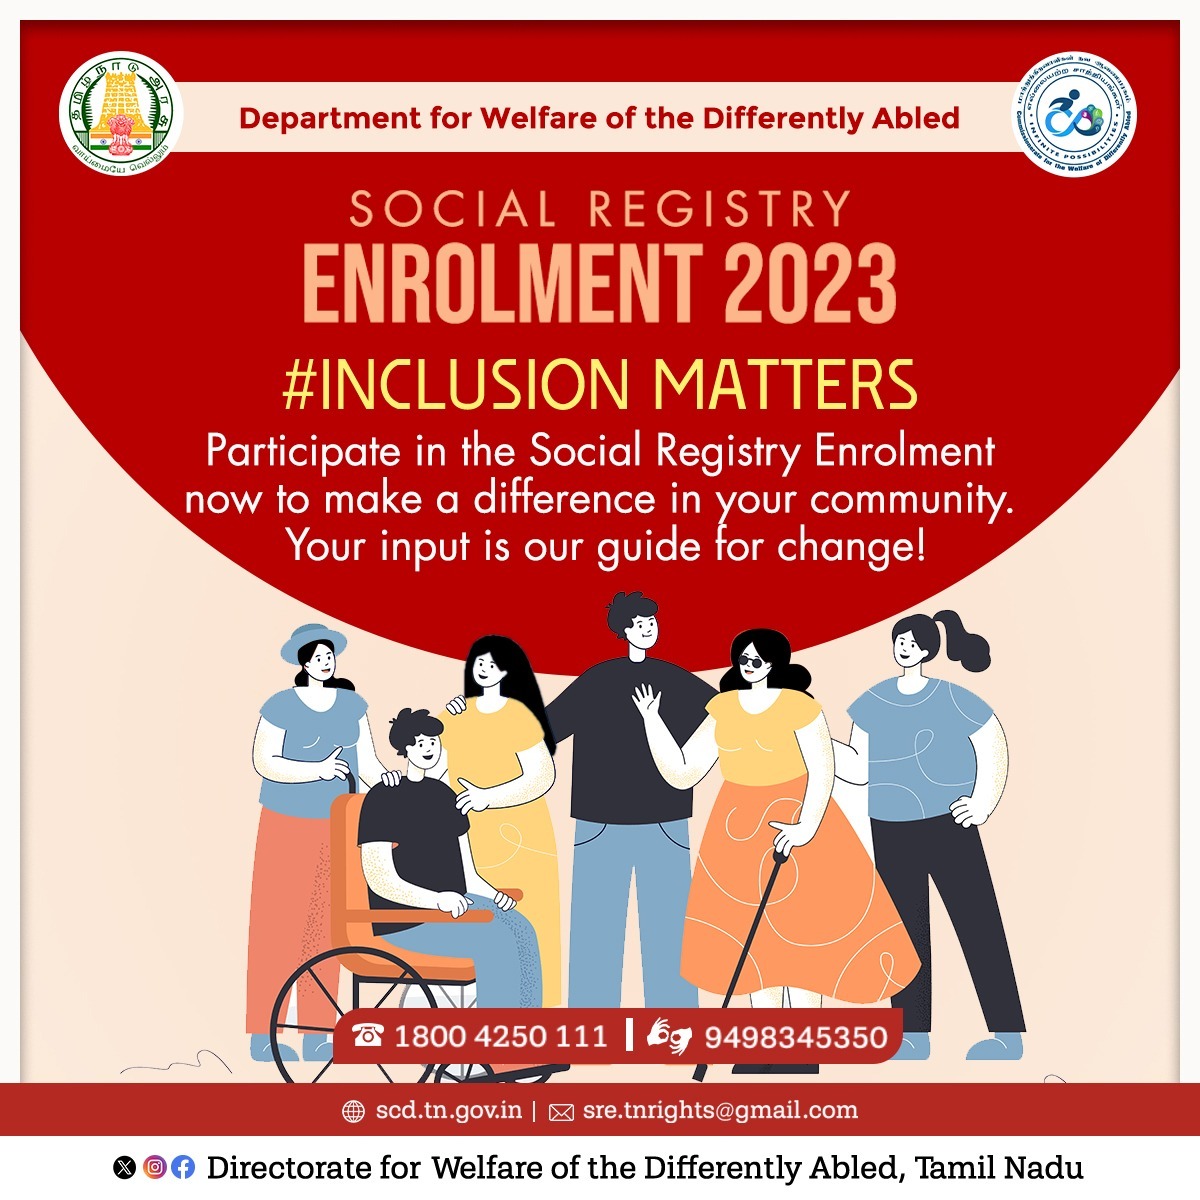 Social Registry Enrolment 2023! #InclusionMatters, #தடையின்றிதலைநிமிர்வோம் #TNGovt #DWDA